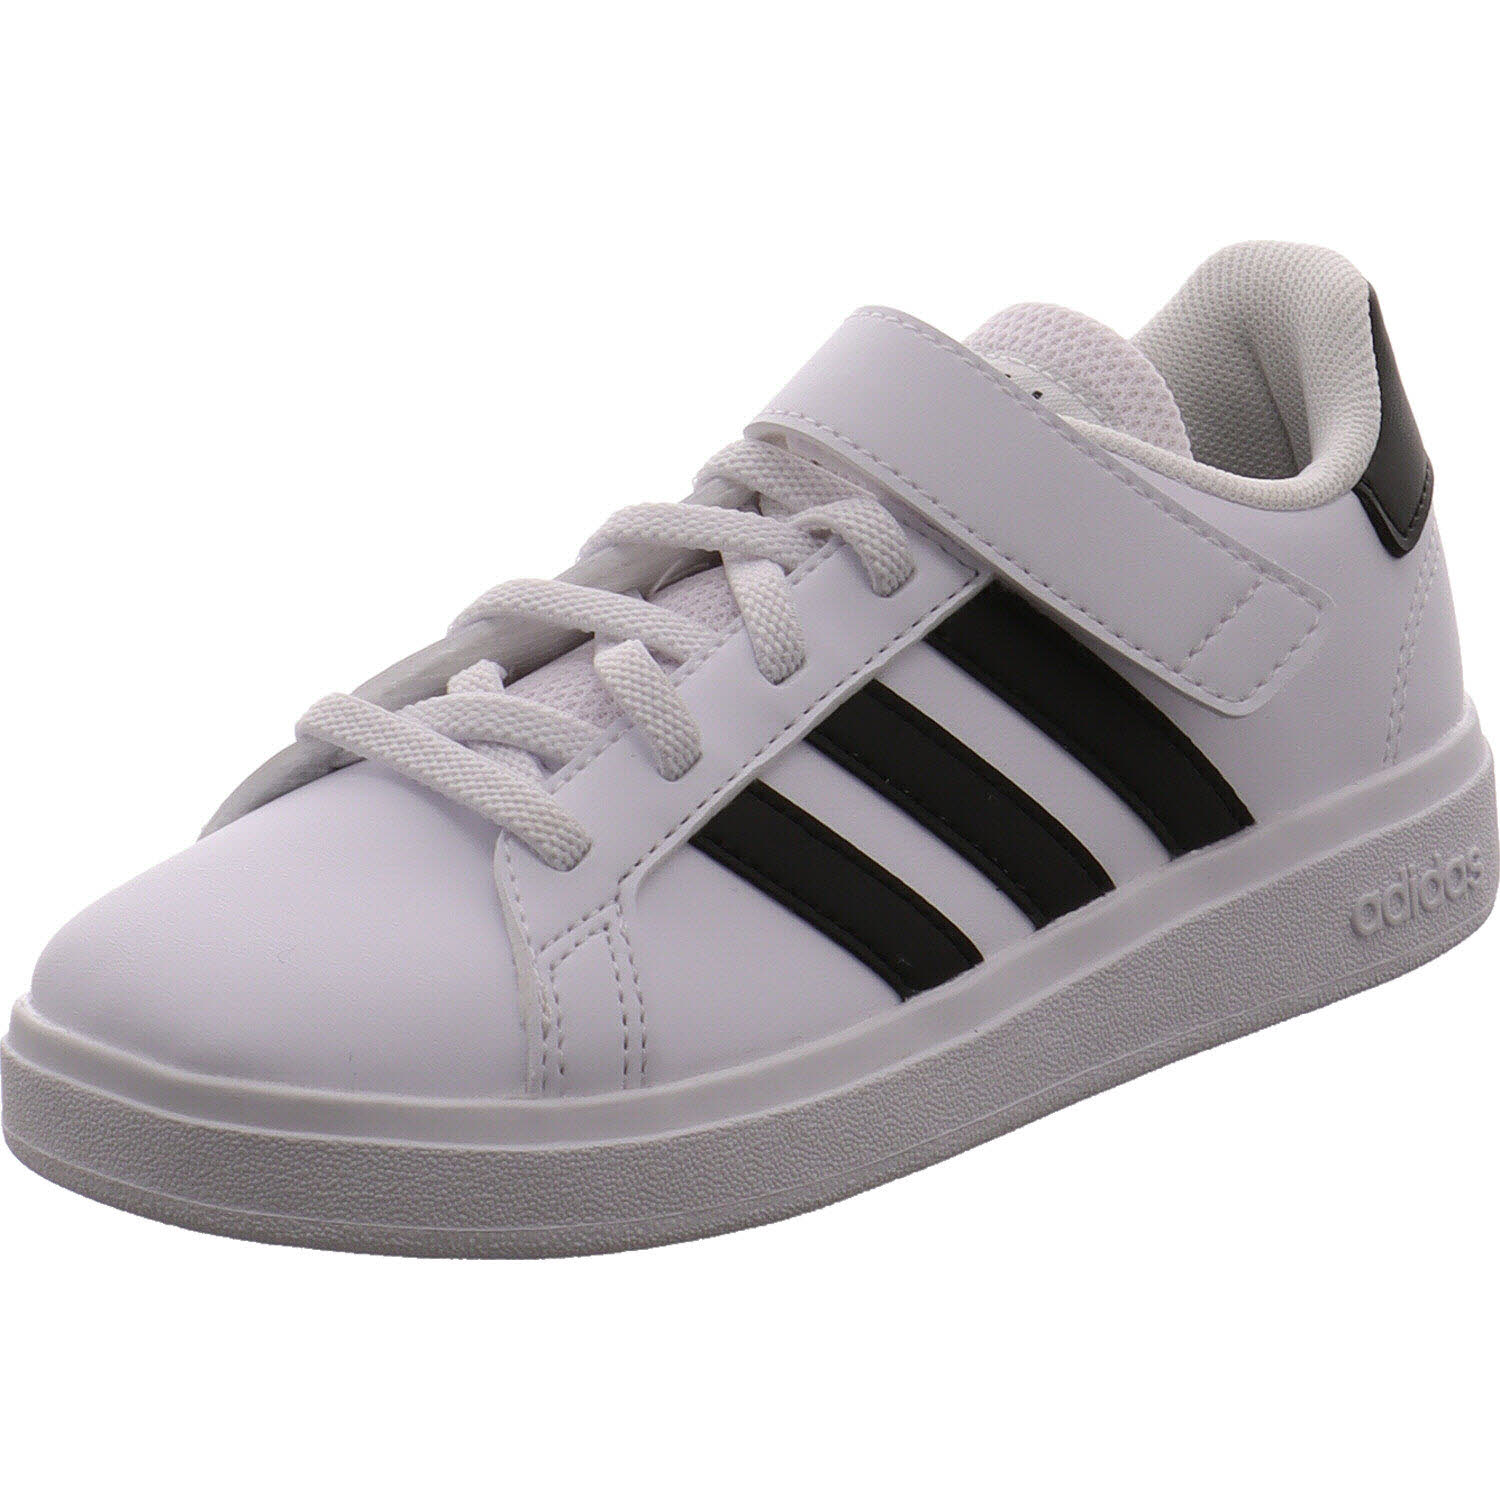 Unisex Sneaker low Grand Court 2.0 EL C von Adidas auch in Weiß erhältlich